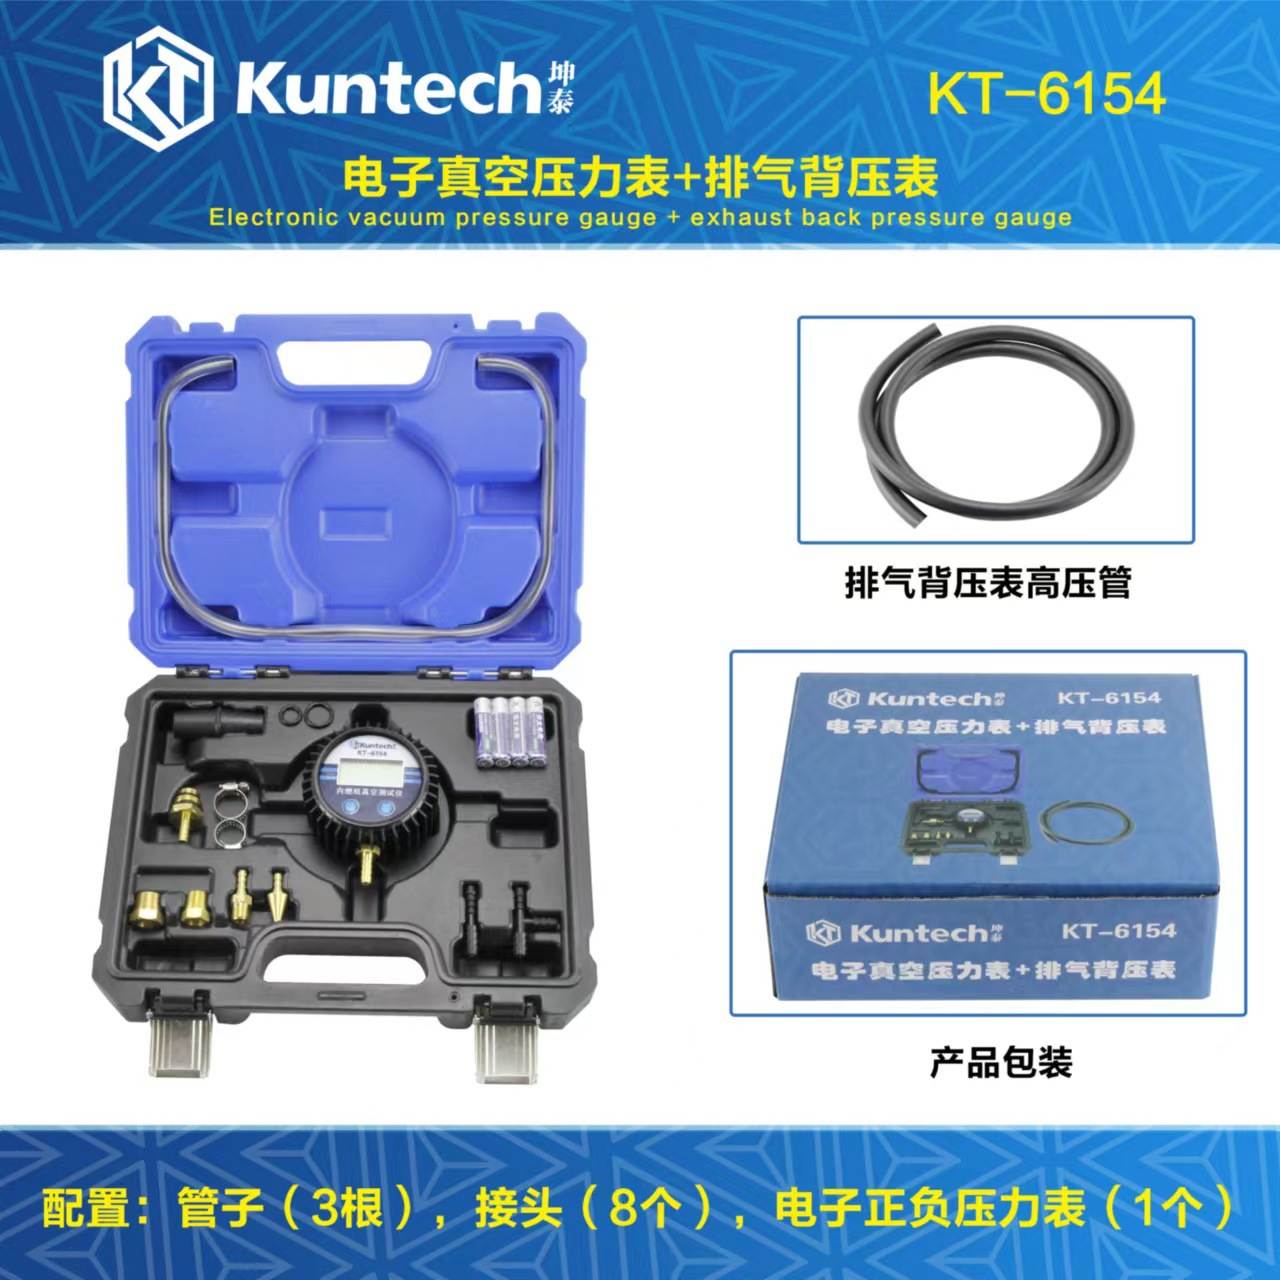 坤泰专用工具KT6154 数显汽车电子真空压力表 排气背压表组合套